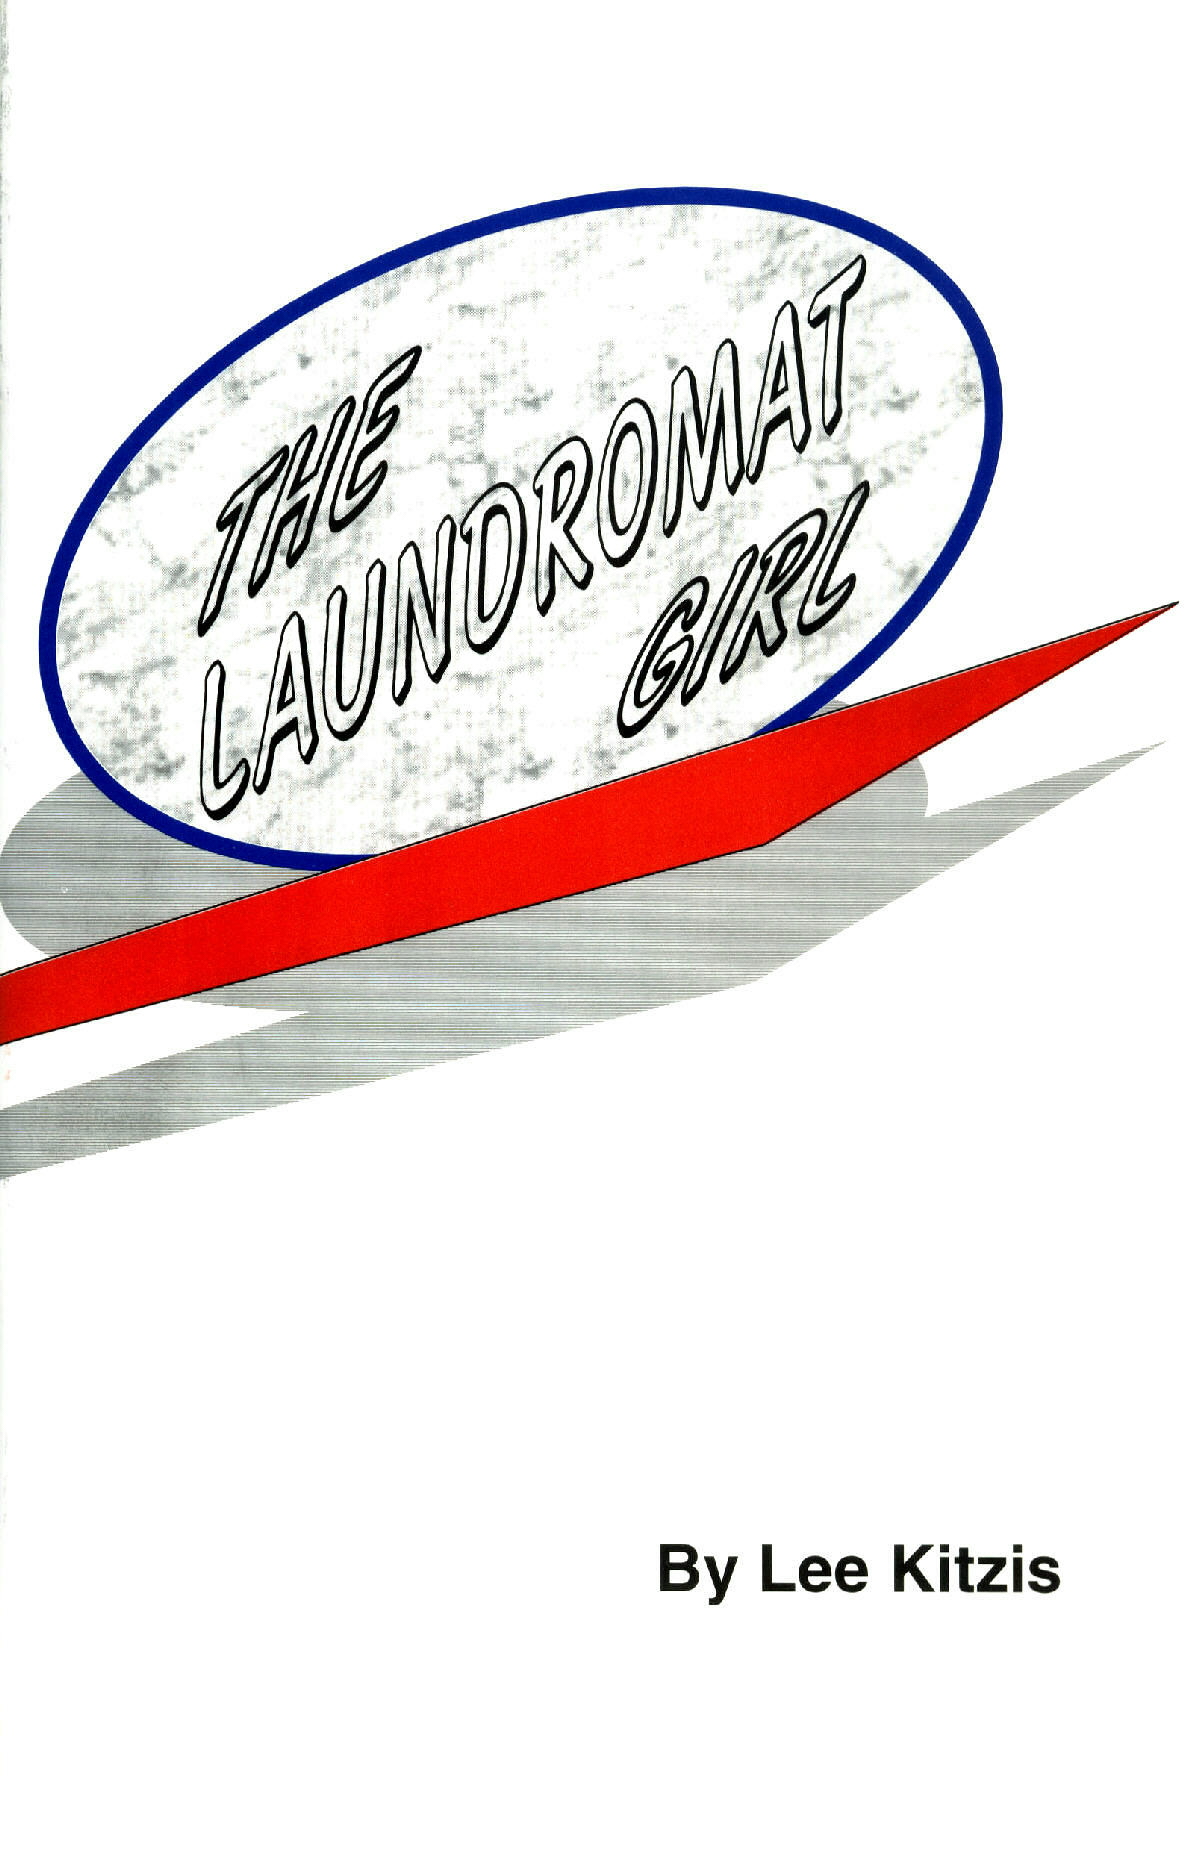 The Laundromat Girl